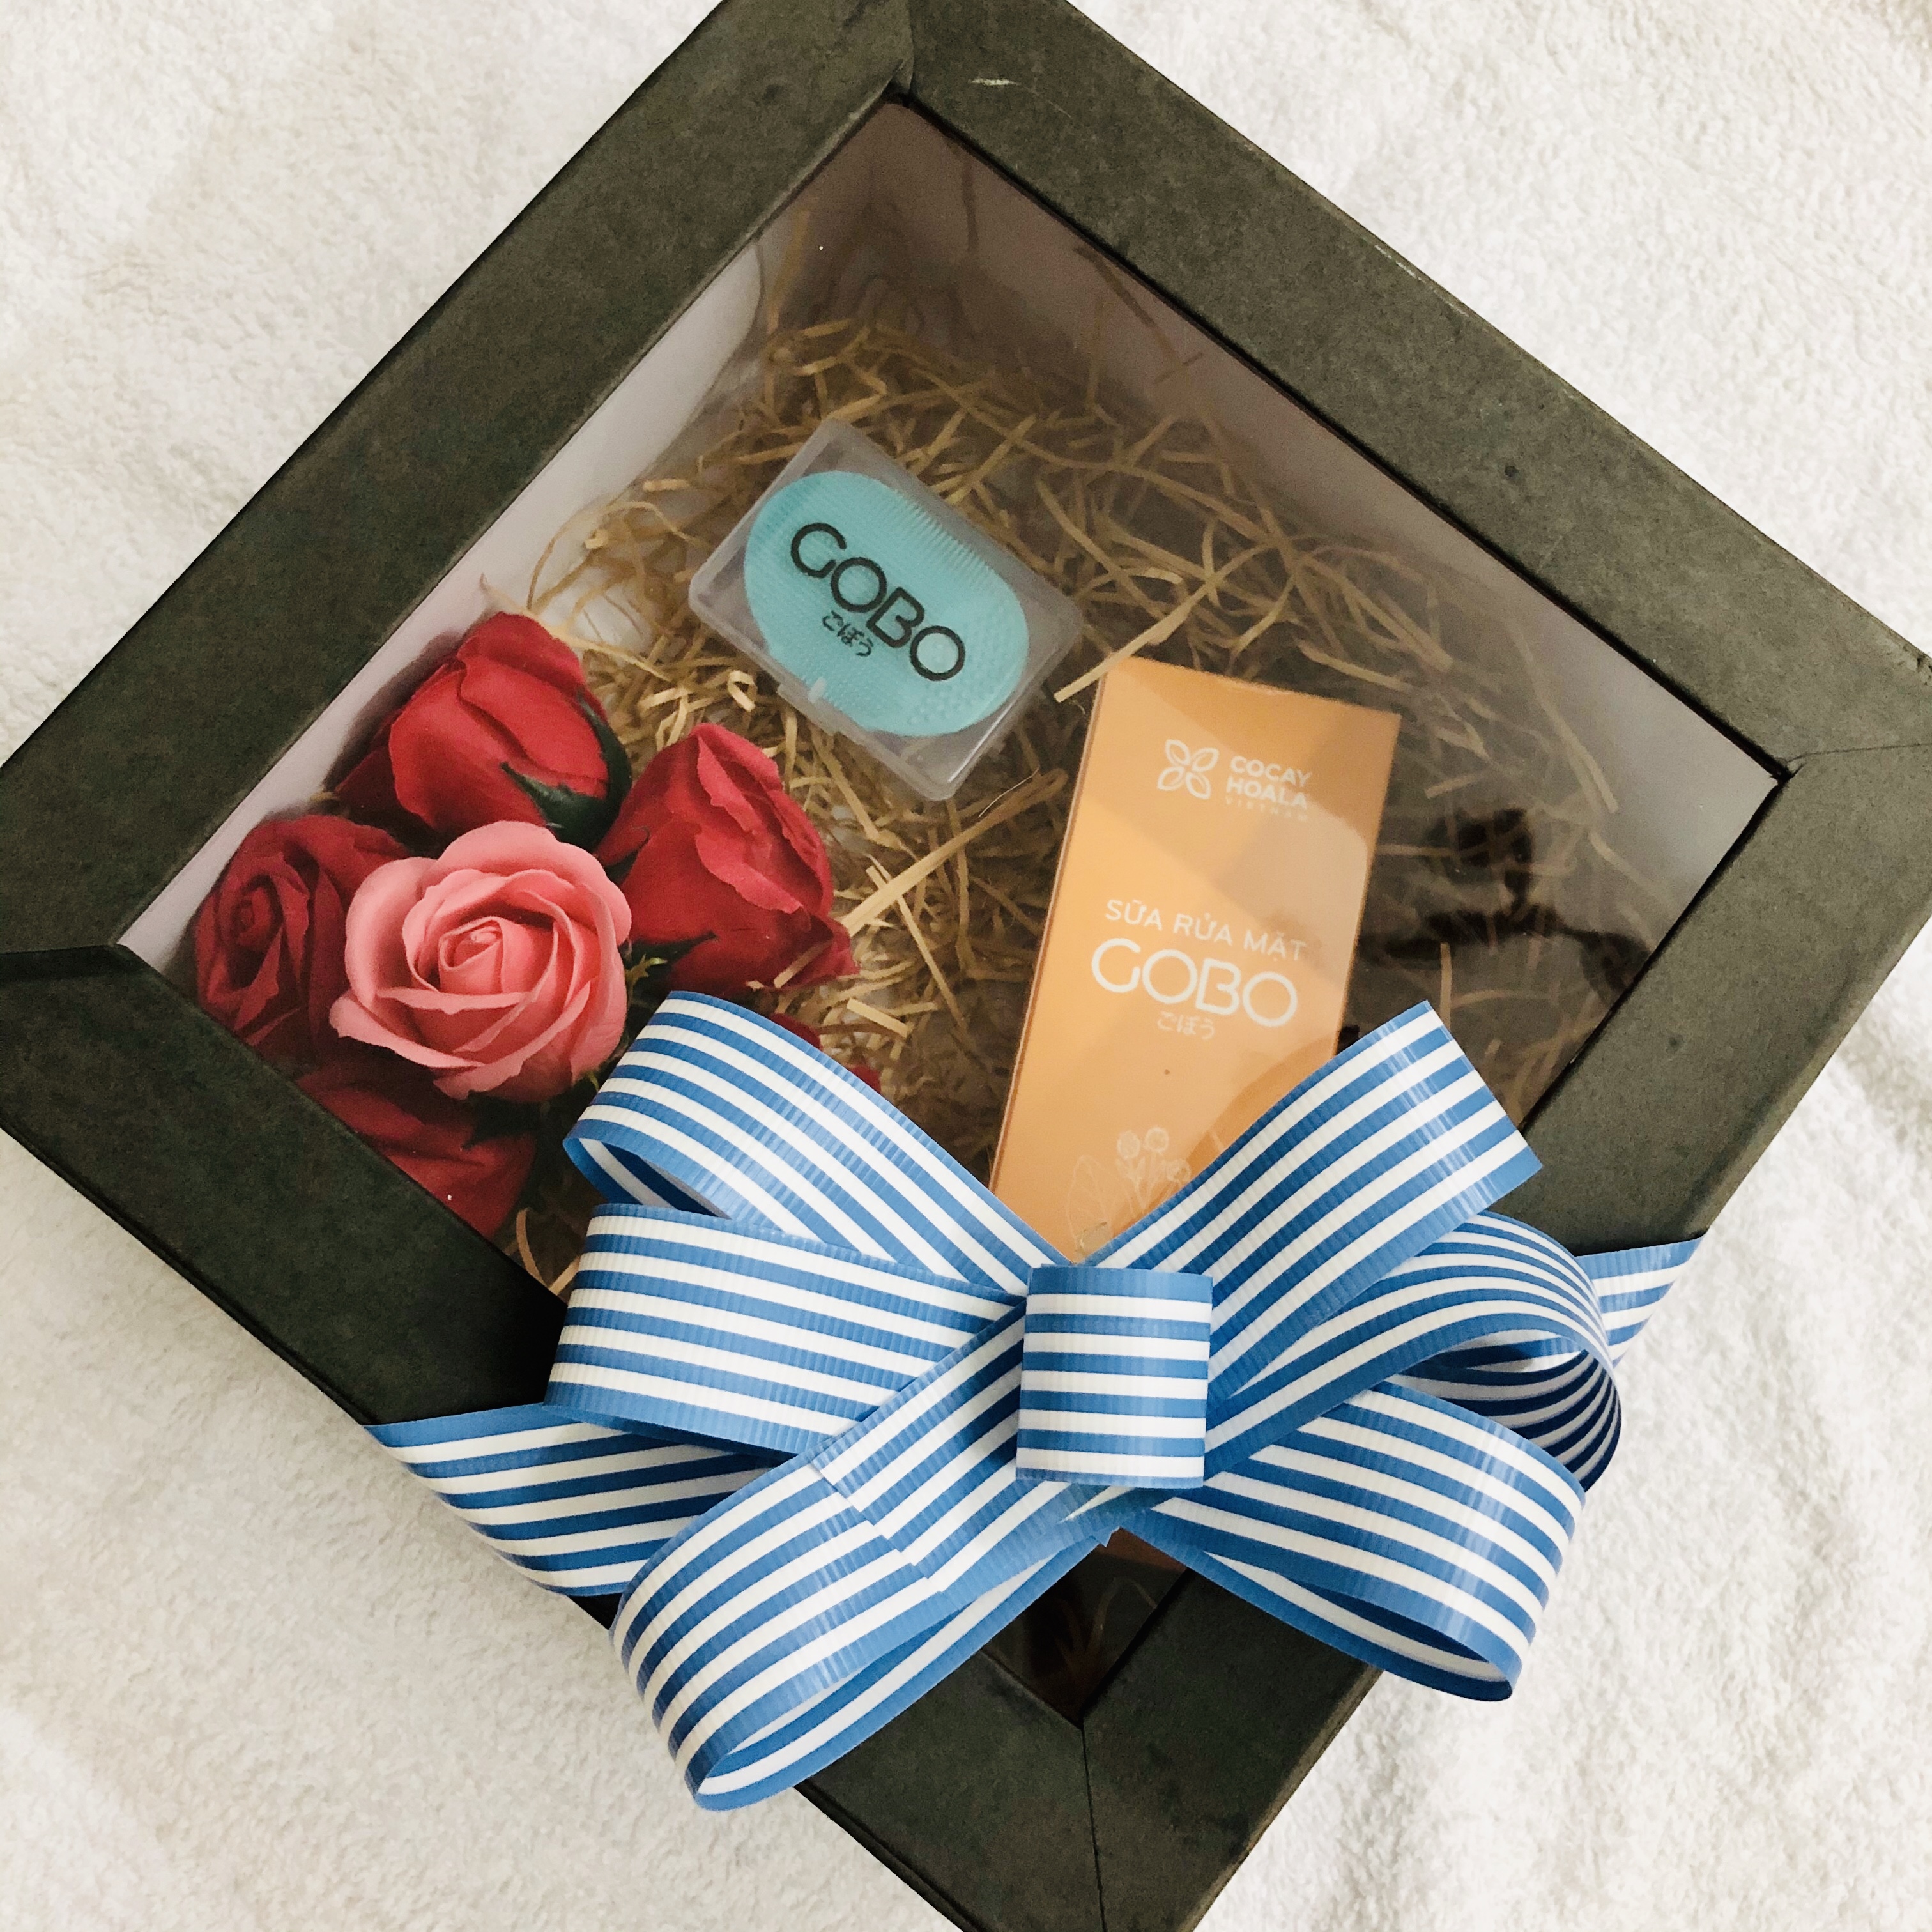 Quà tặng cho nàng - Sữa rửa mặt GOBO hỗ trợ điều trị mụn, thon gọn gương mặt, làm sáng sa và thu nhỏ lỗ chân lông - Sản phẩm thiên nhiên từ COCAYHOALA (Có bao gồm hộp quà tặng và hoa như hình)